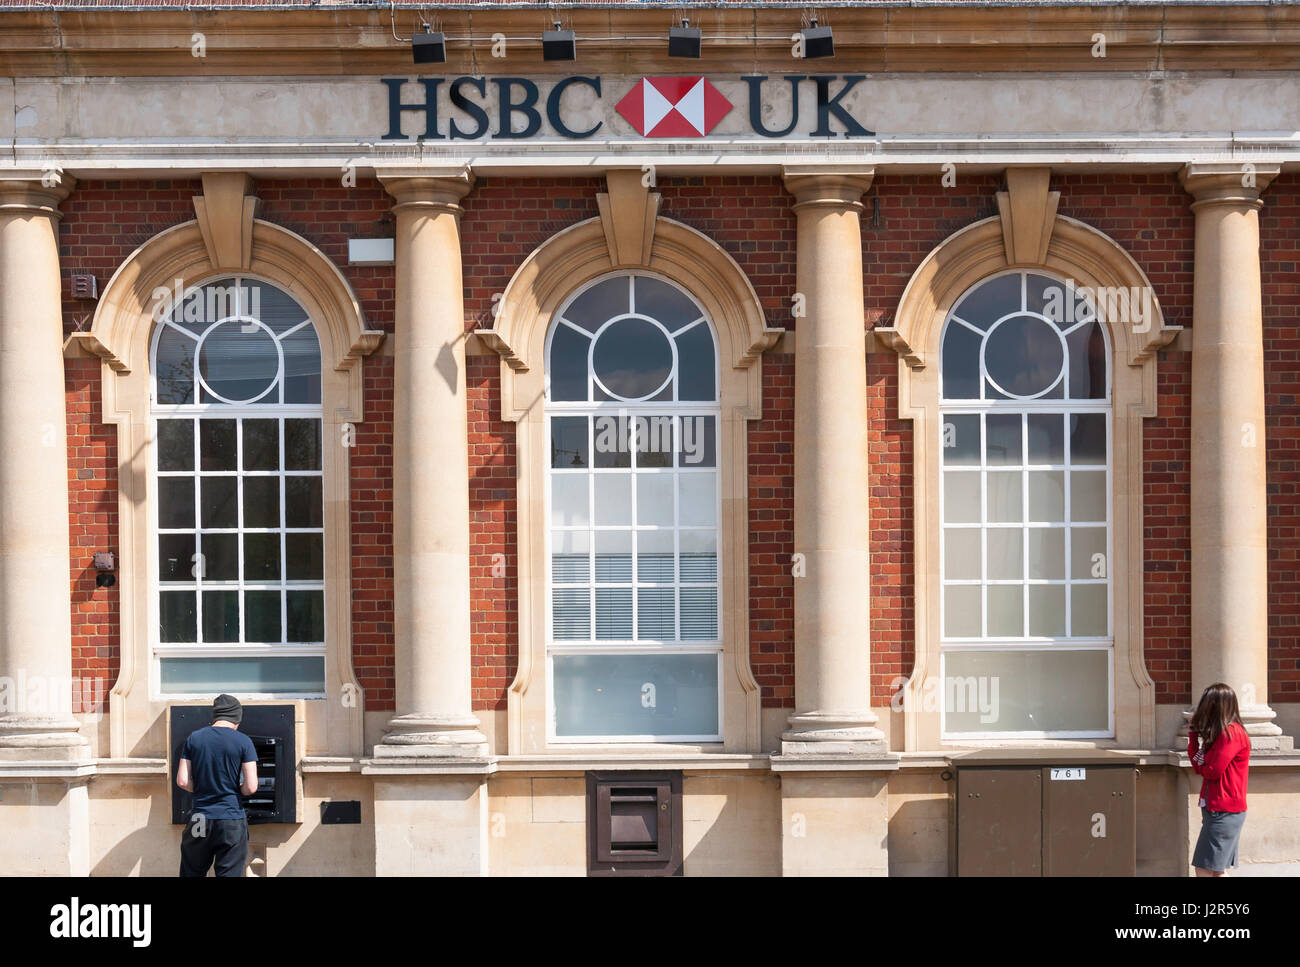 La banque britannique HSBC, Station, Letchworth Garden City, Hertfordshire, Angleterre, Royaume-Uni Banque D'Images